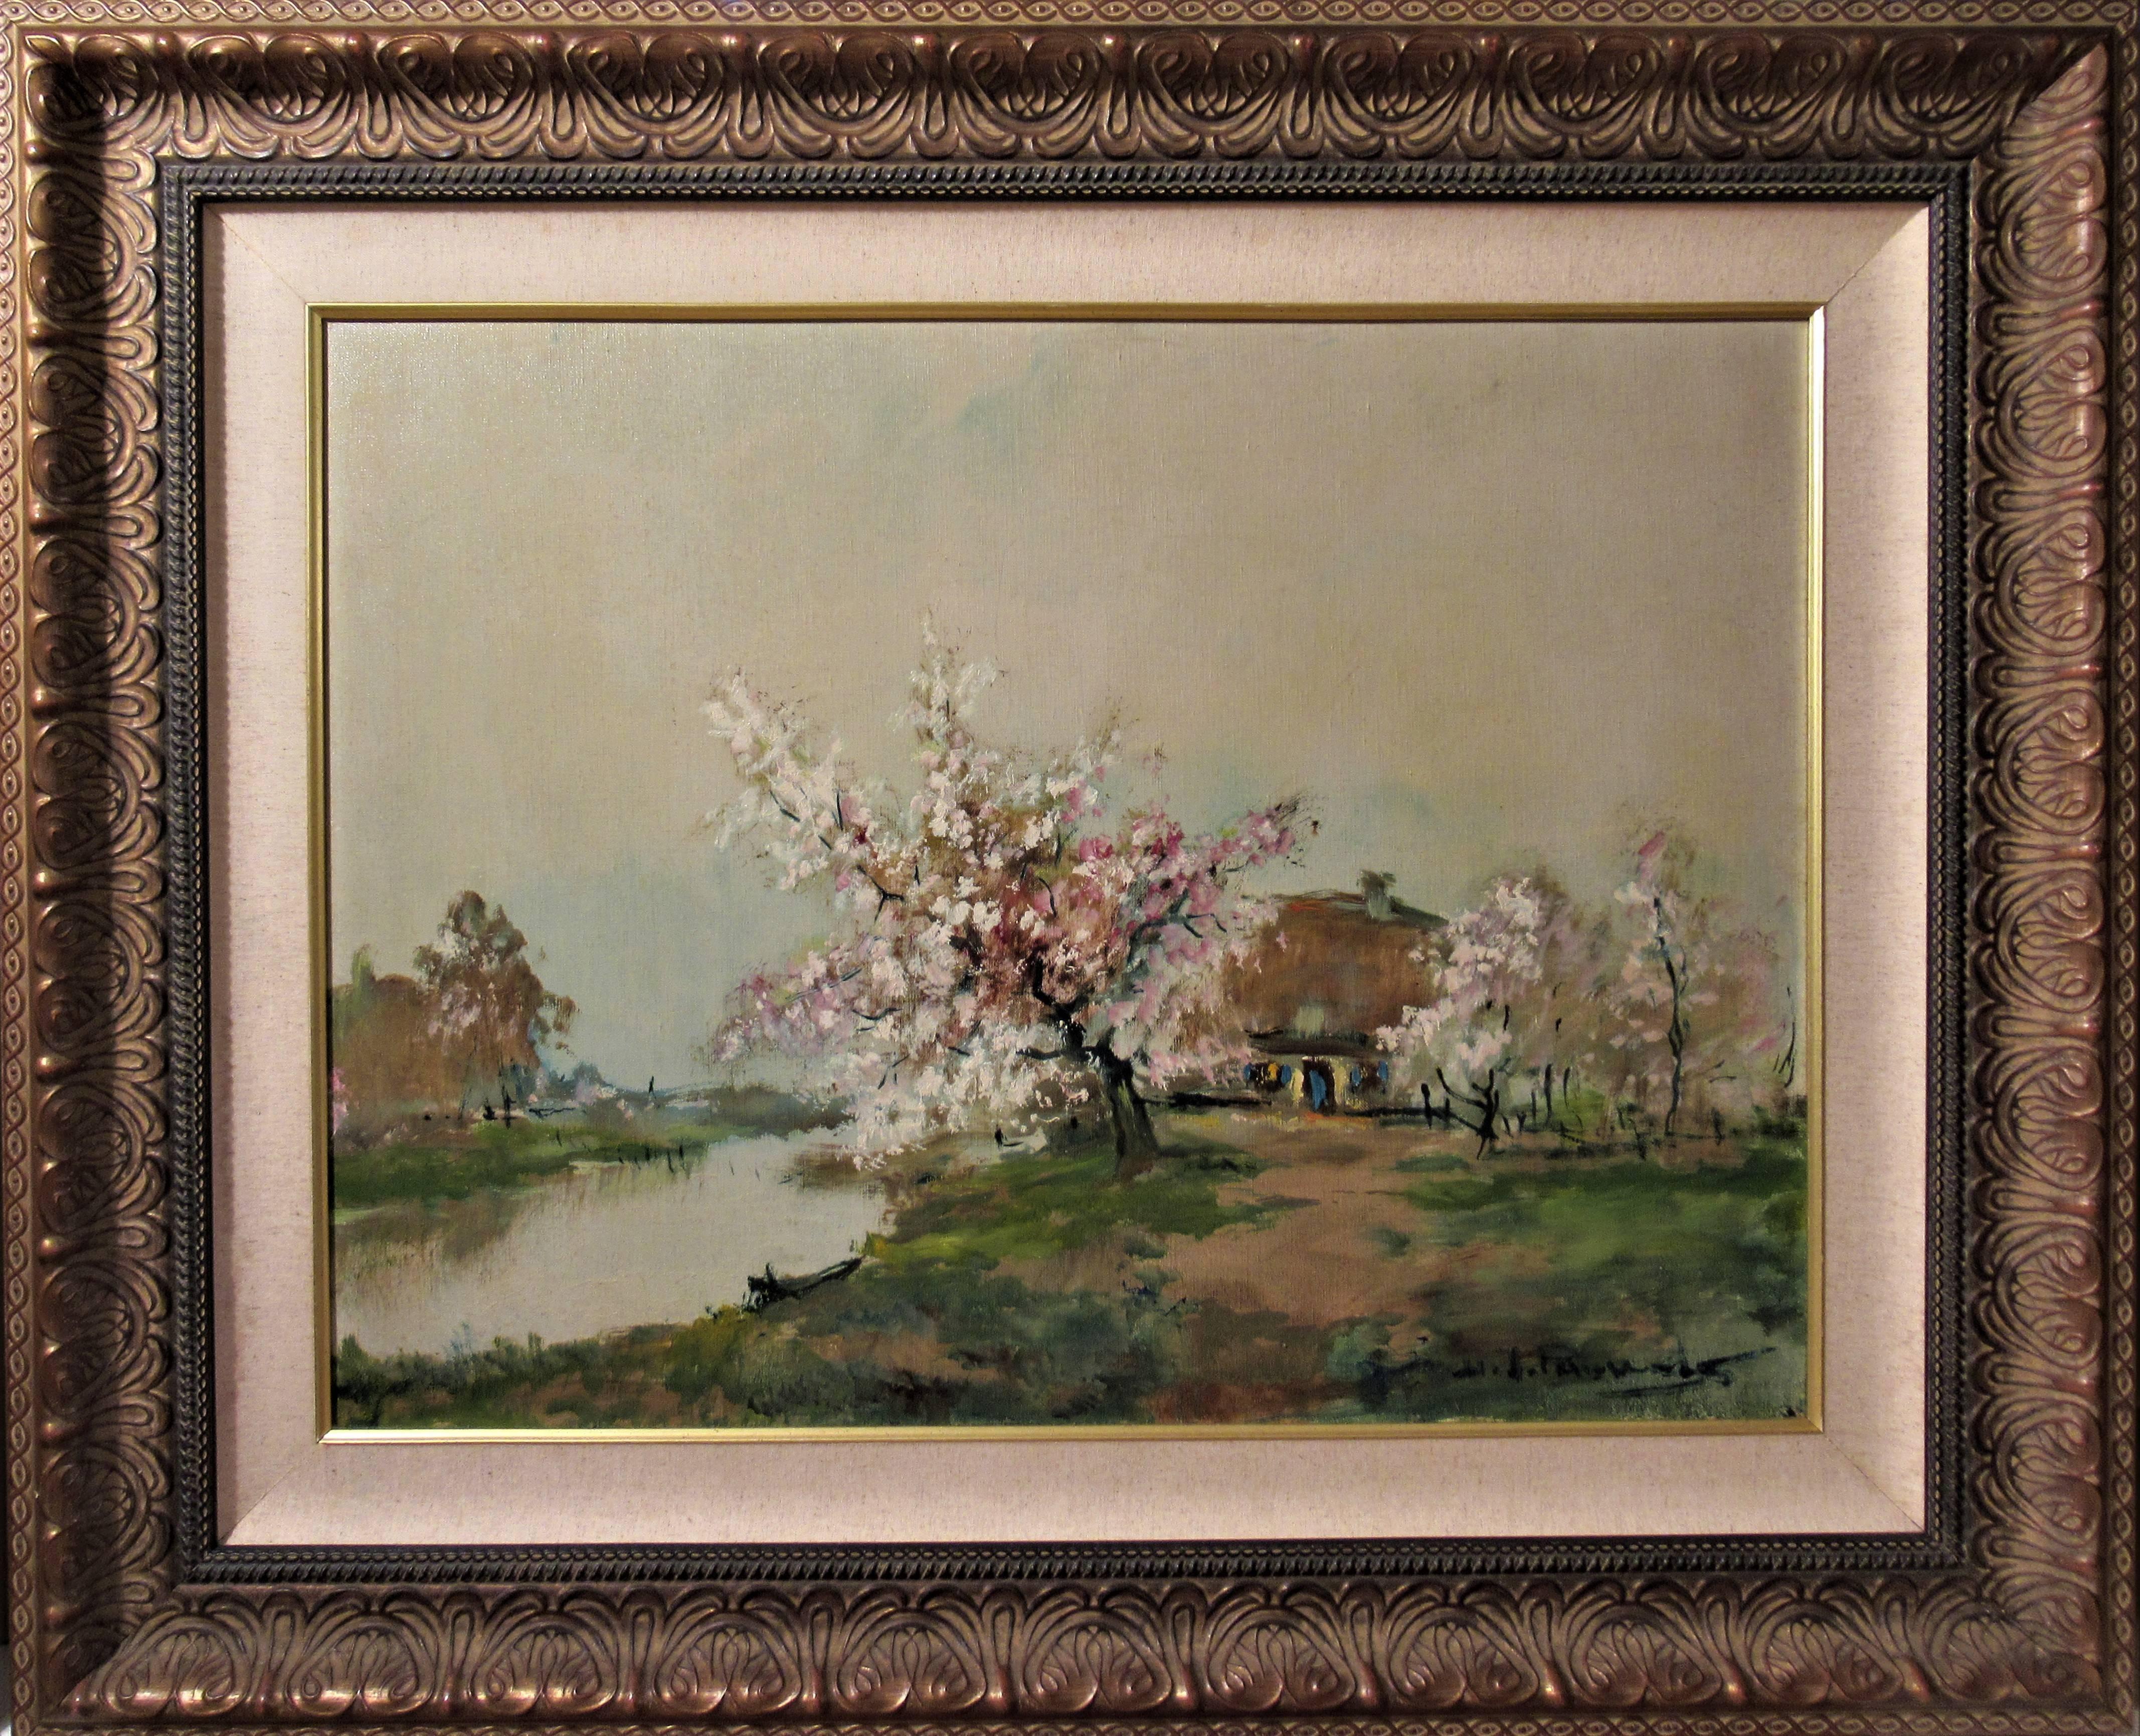 Henri Joseph Pauwels Landscape Painting - Landscape with River and Farm